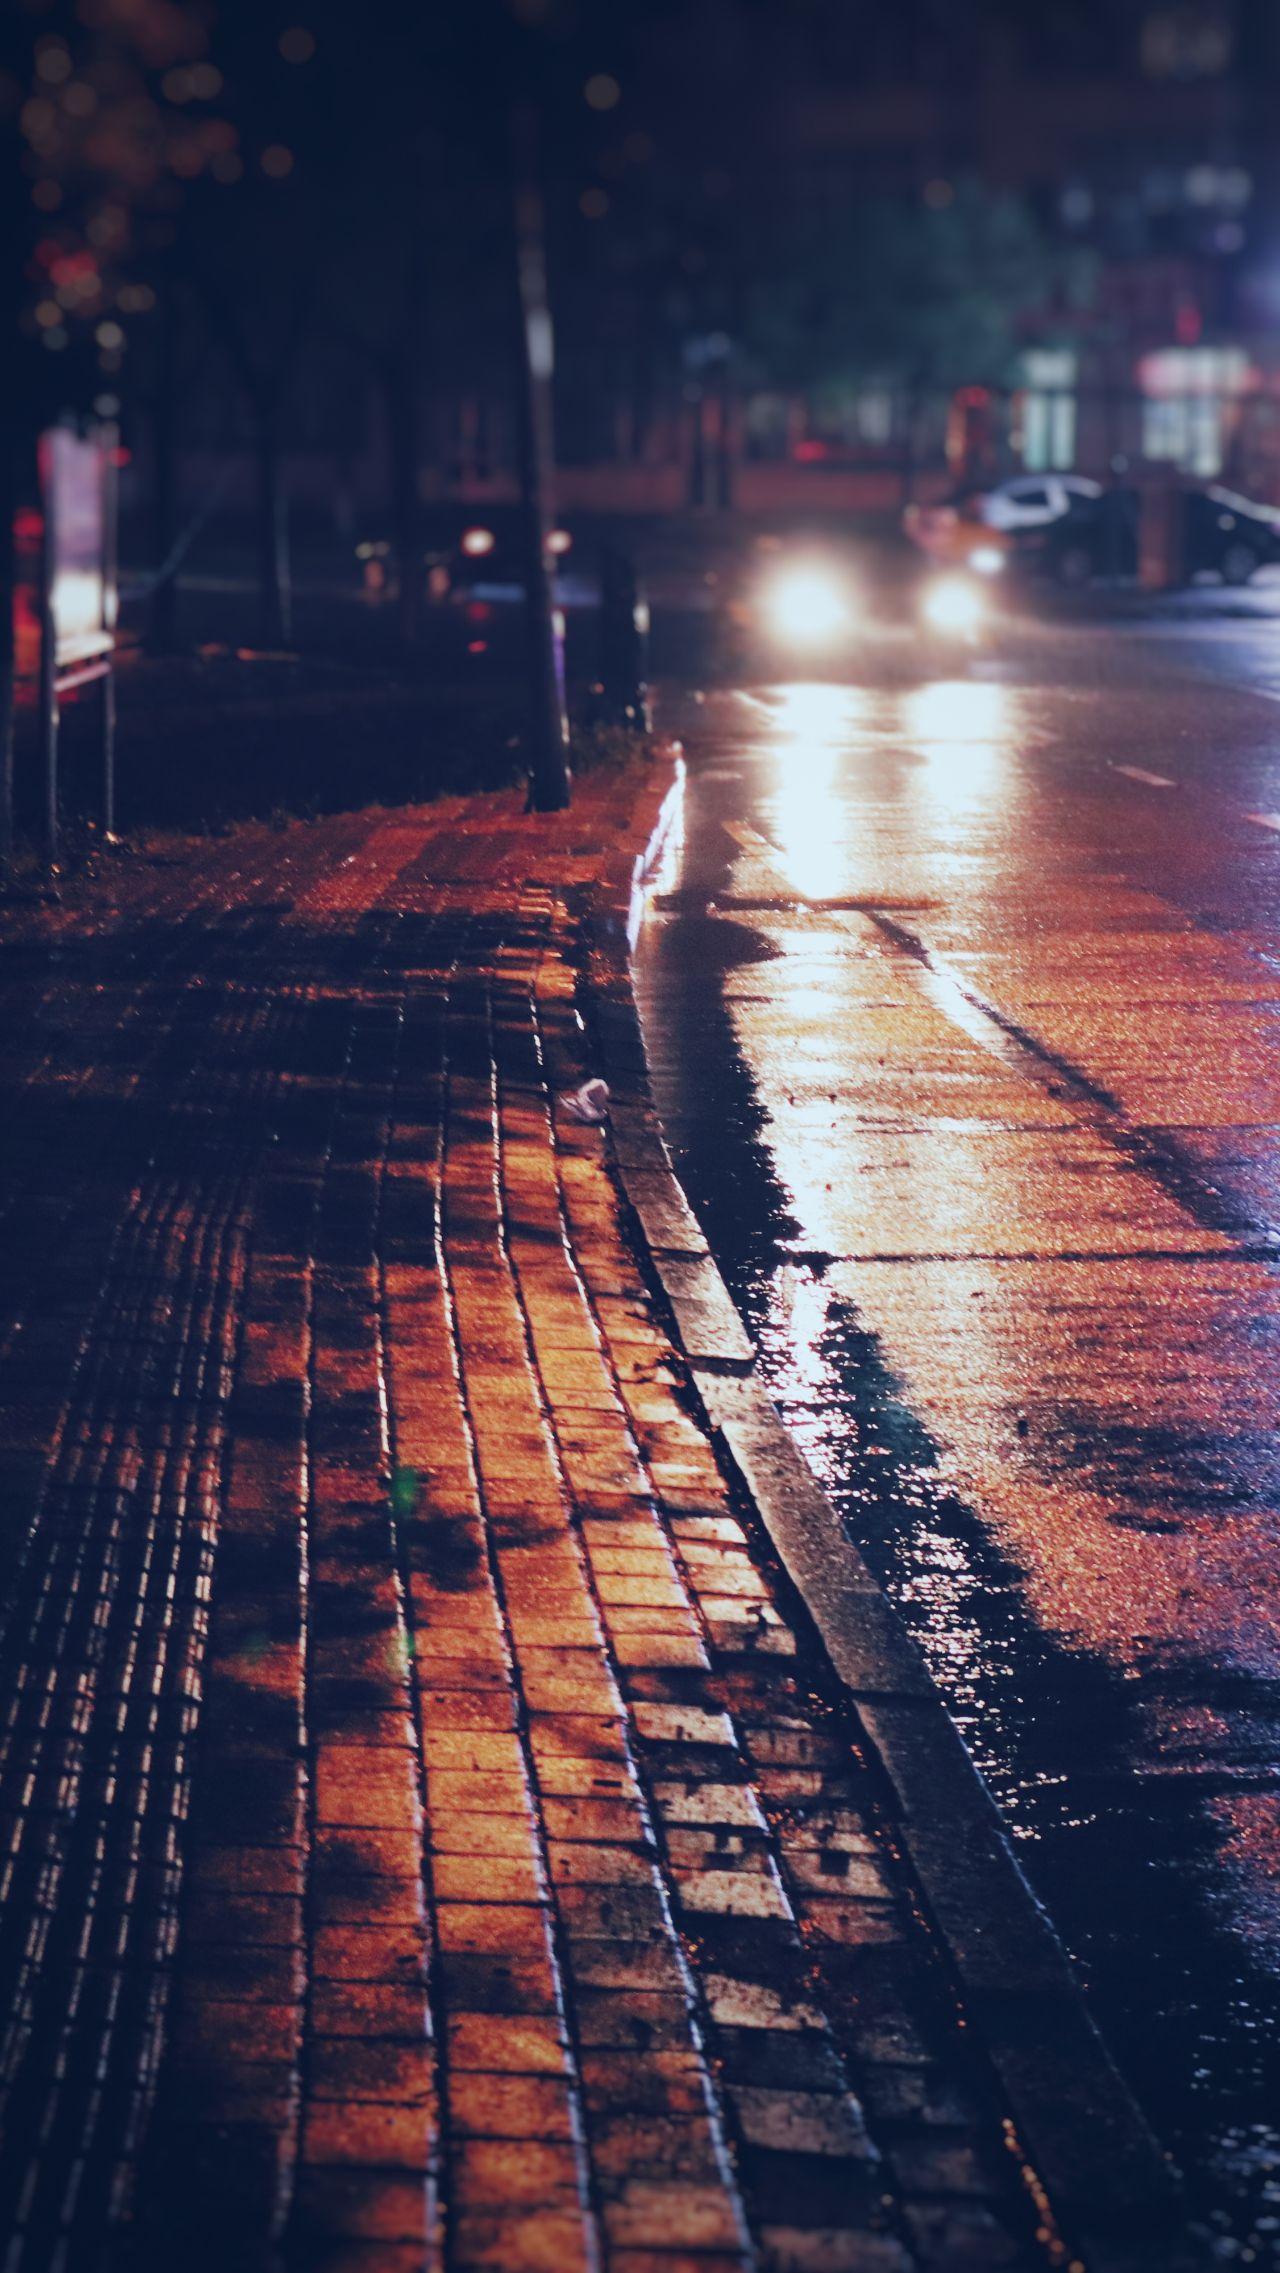 夜晚下雨的城市壁纸 - 夜晚下雨的城市手机壁纸 - 夜晚下雨的城市手机动态壁纸 - 元气壁纸